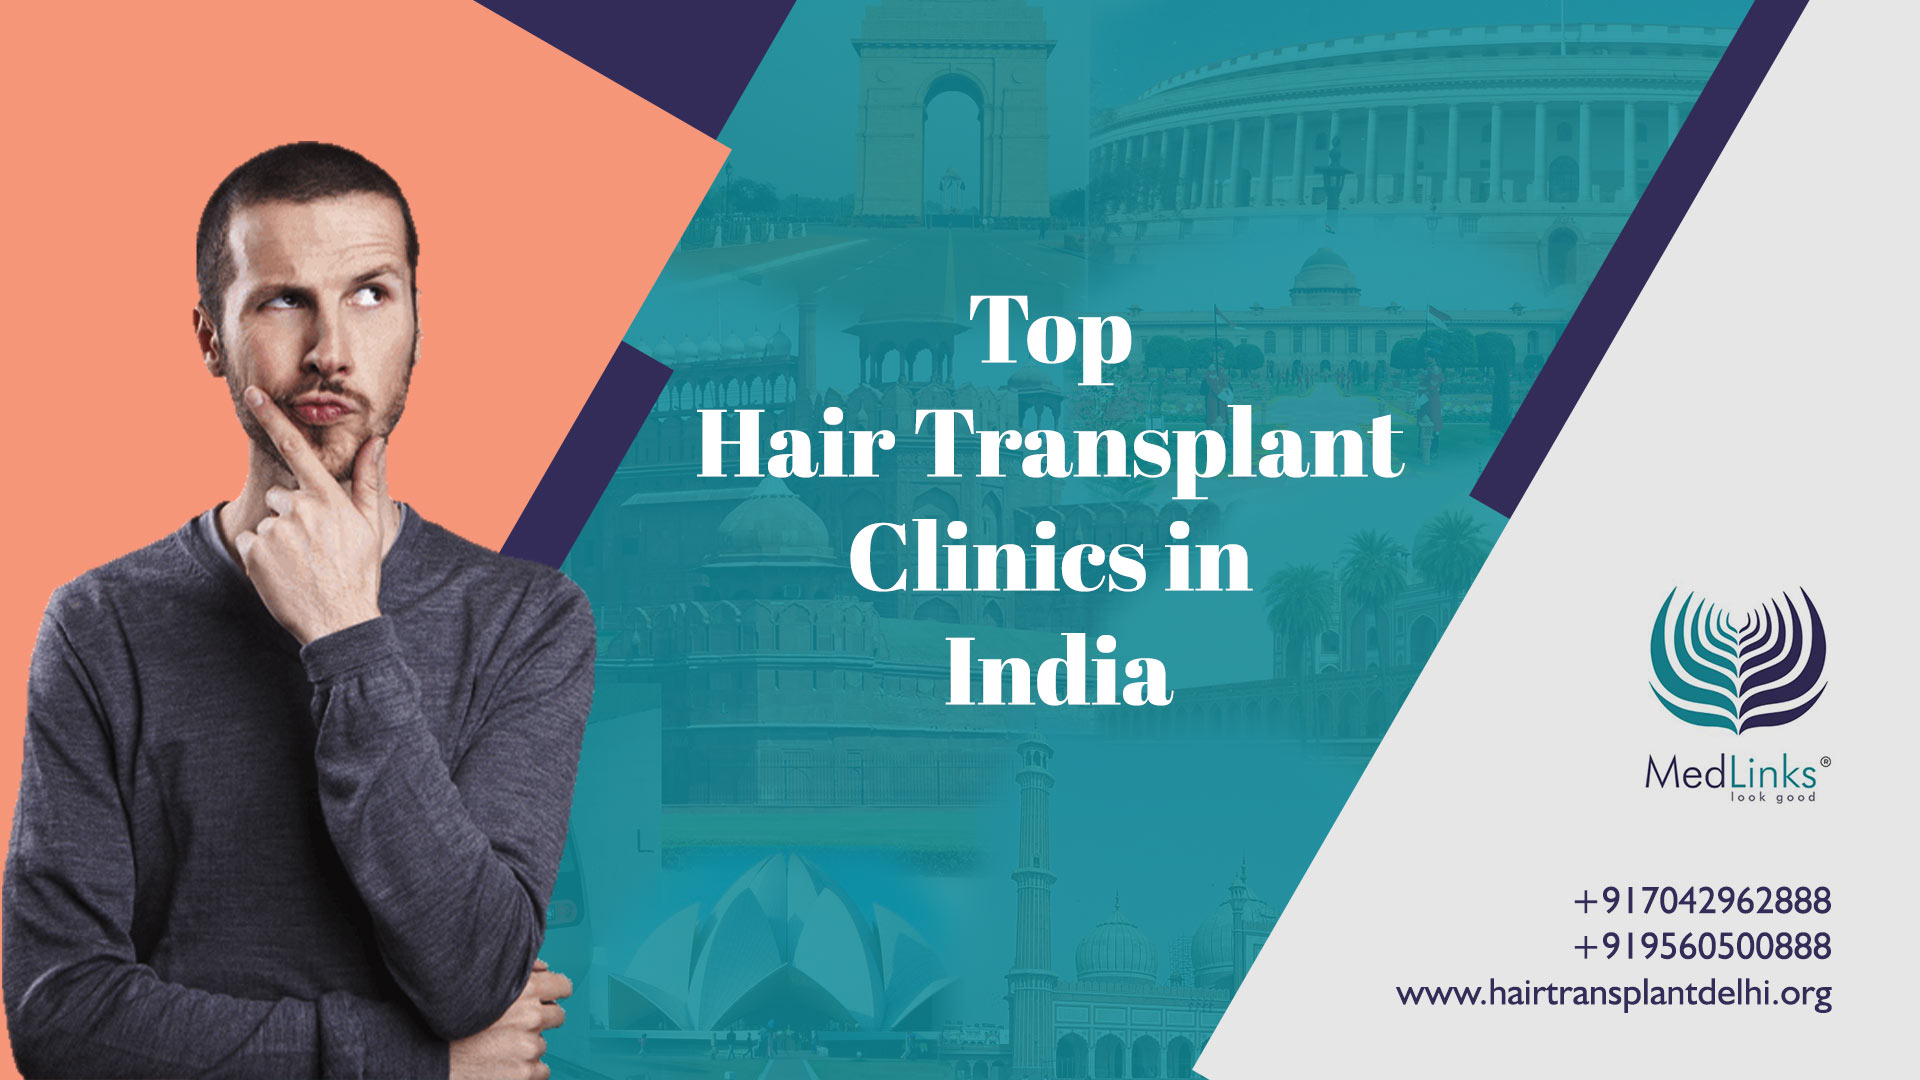 Top Hair Transplant Clinics in India - Medlinks | Medlinks